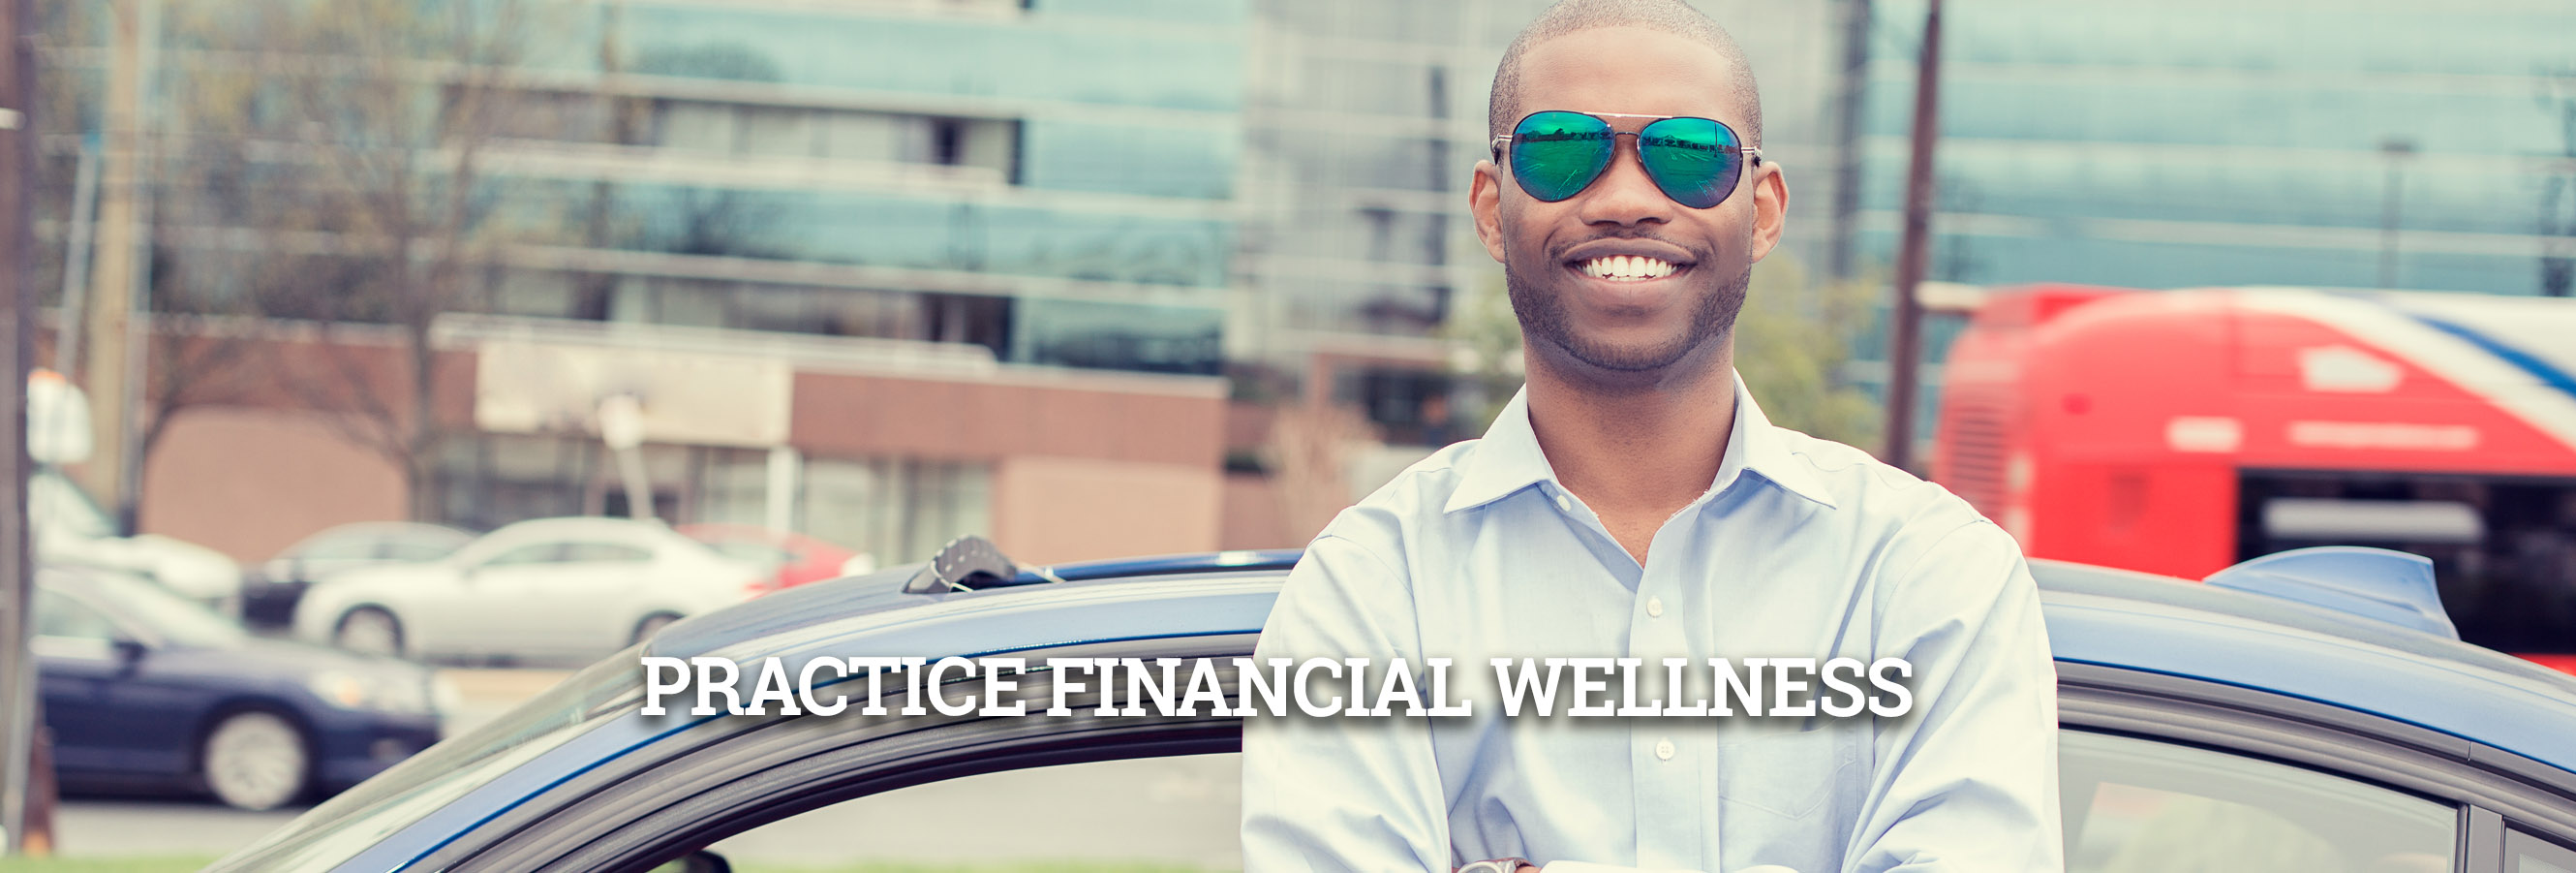 Practice Financial Wellness